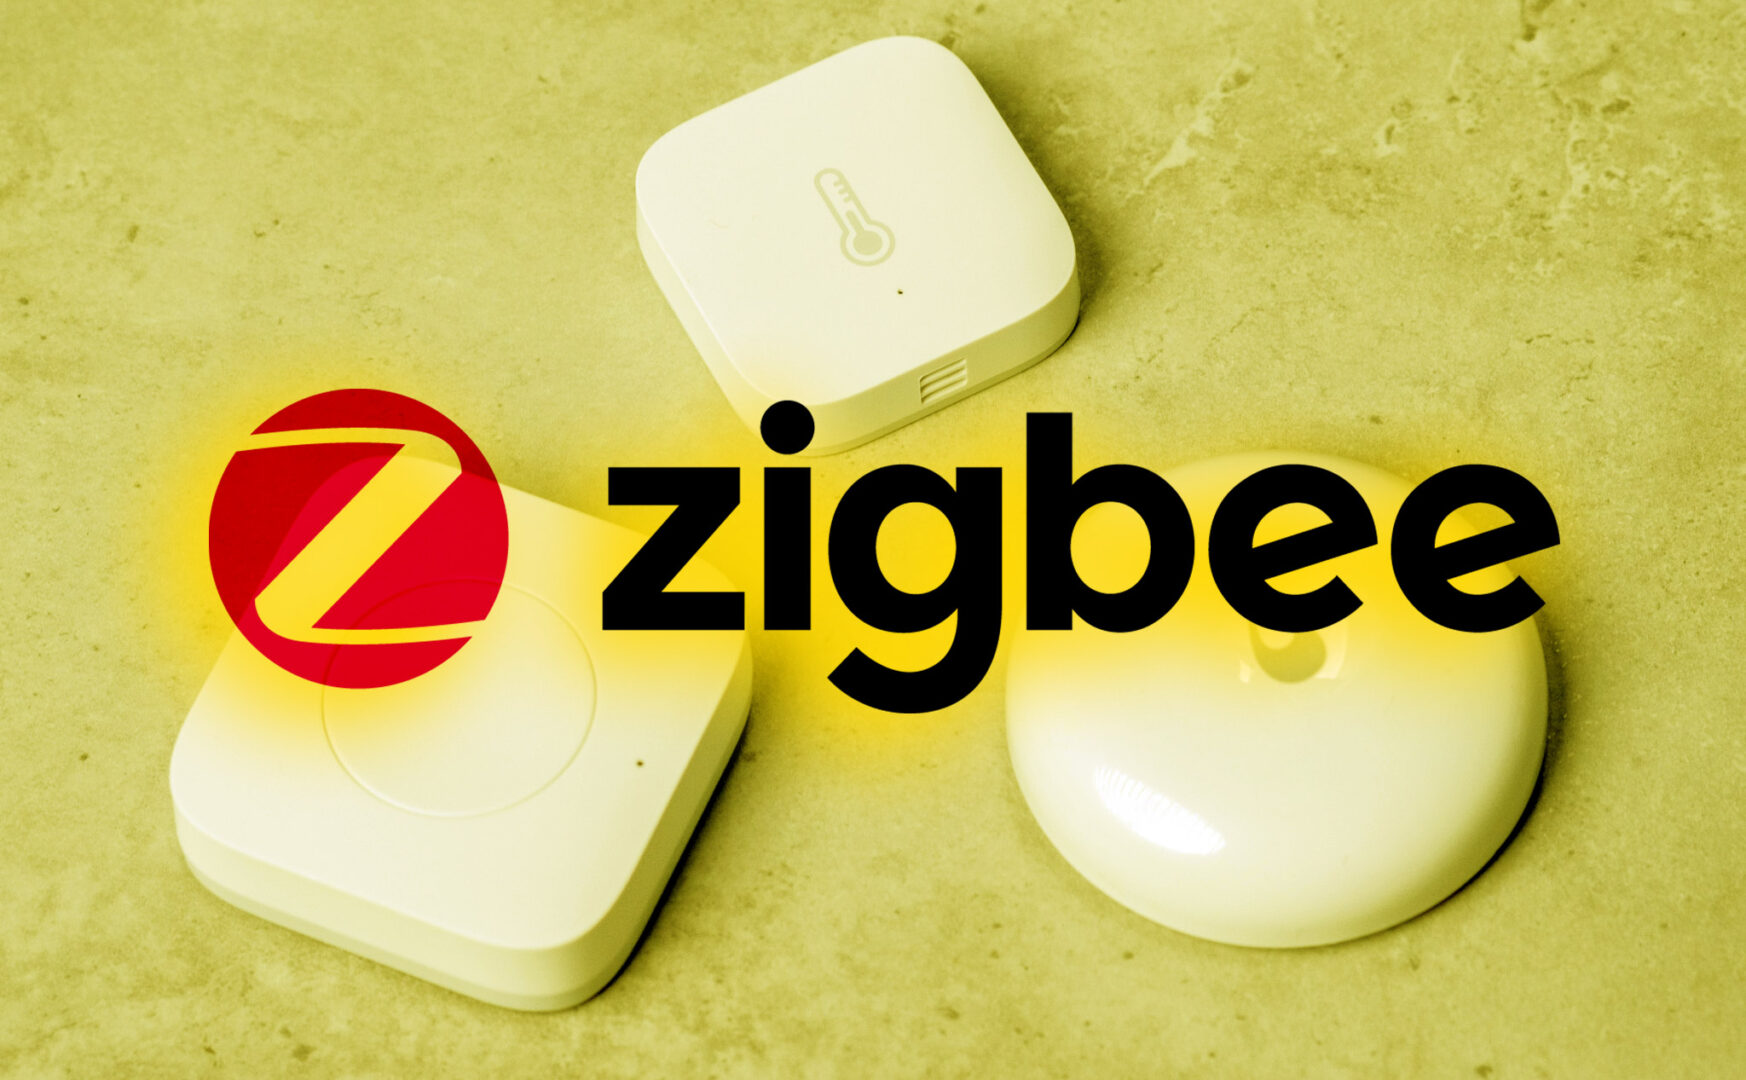 ZigBee là gì? tìm hiểu về zigbee trong hệ thống nhà thông minh